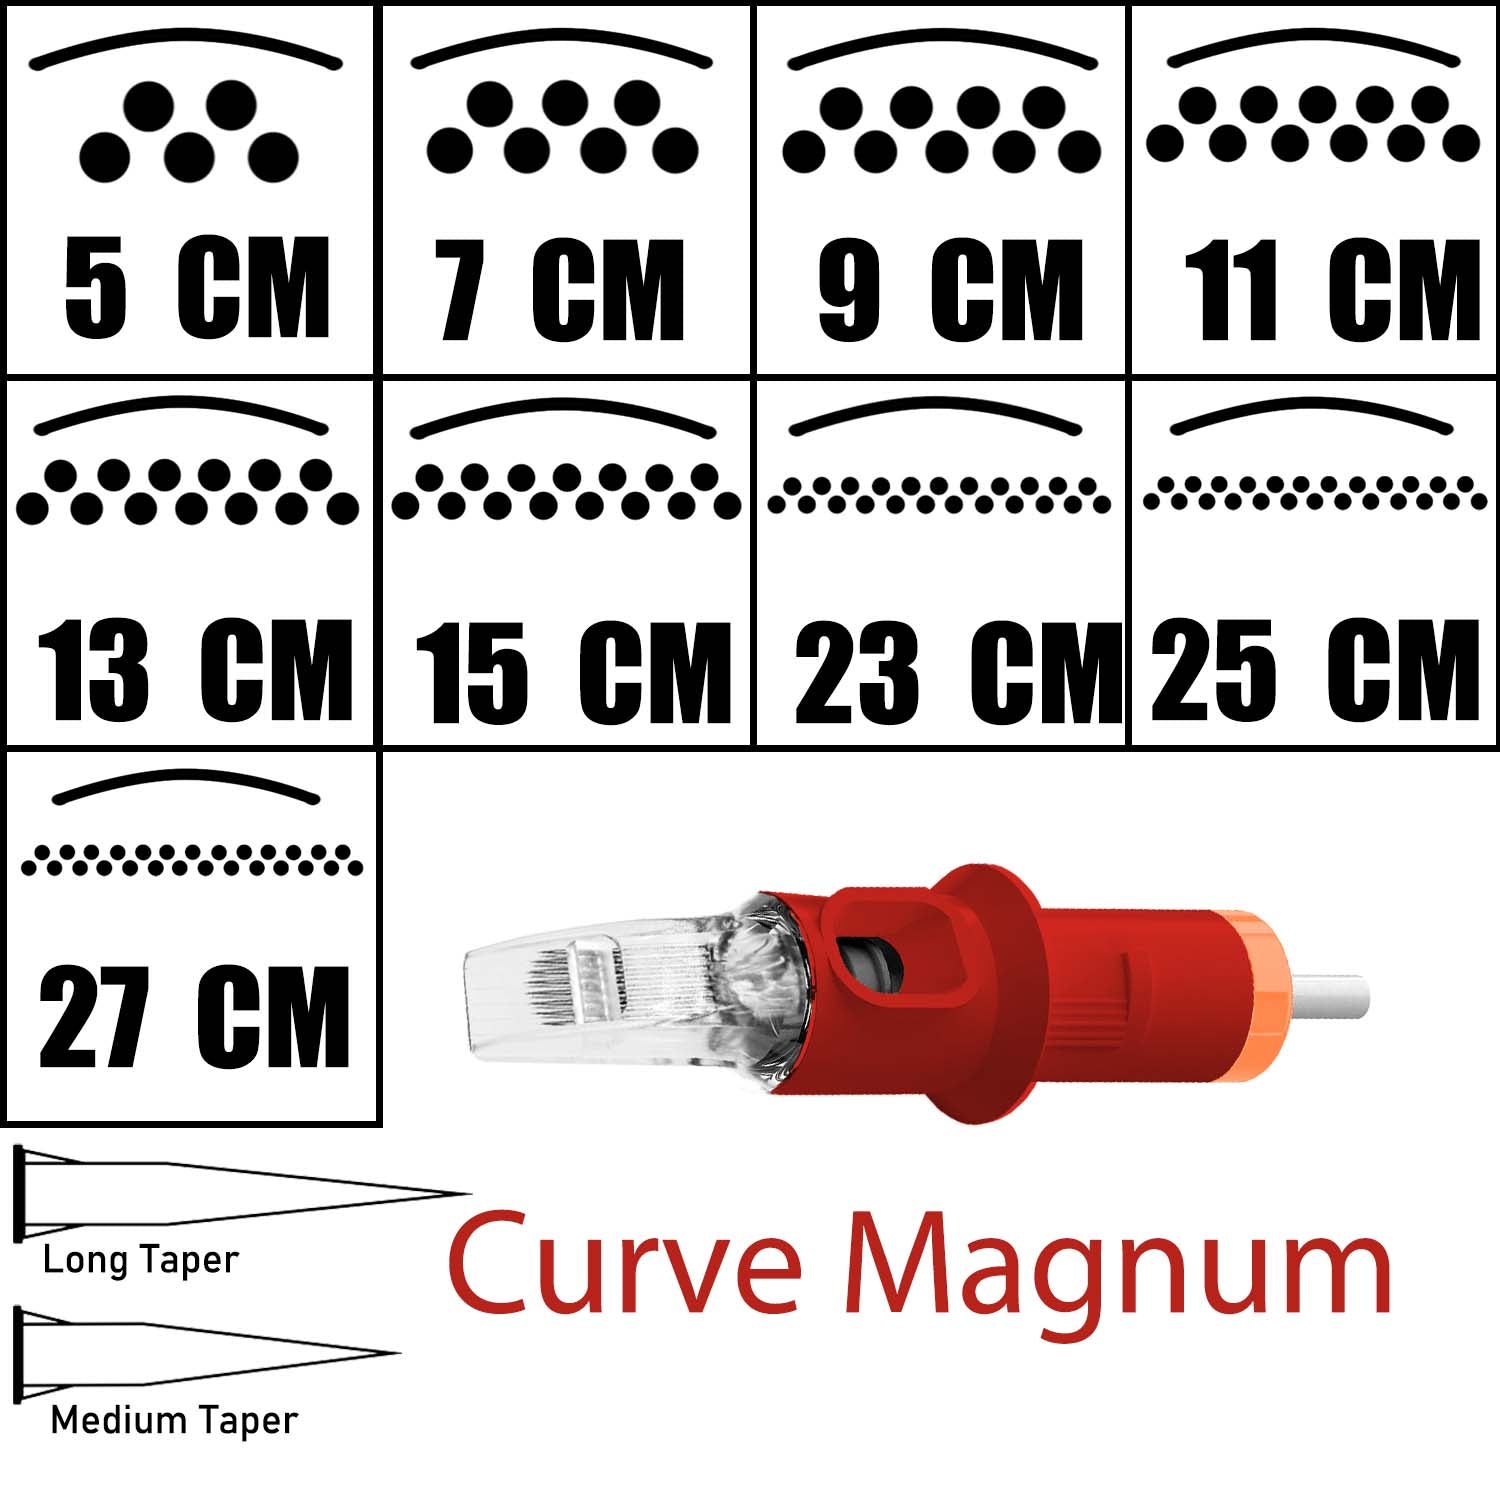 Warrior Red Cartucce Per Tatuaggio Curve Magnum